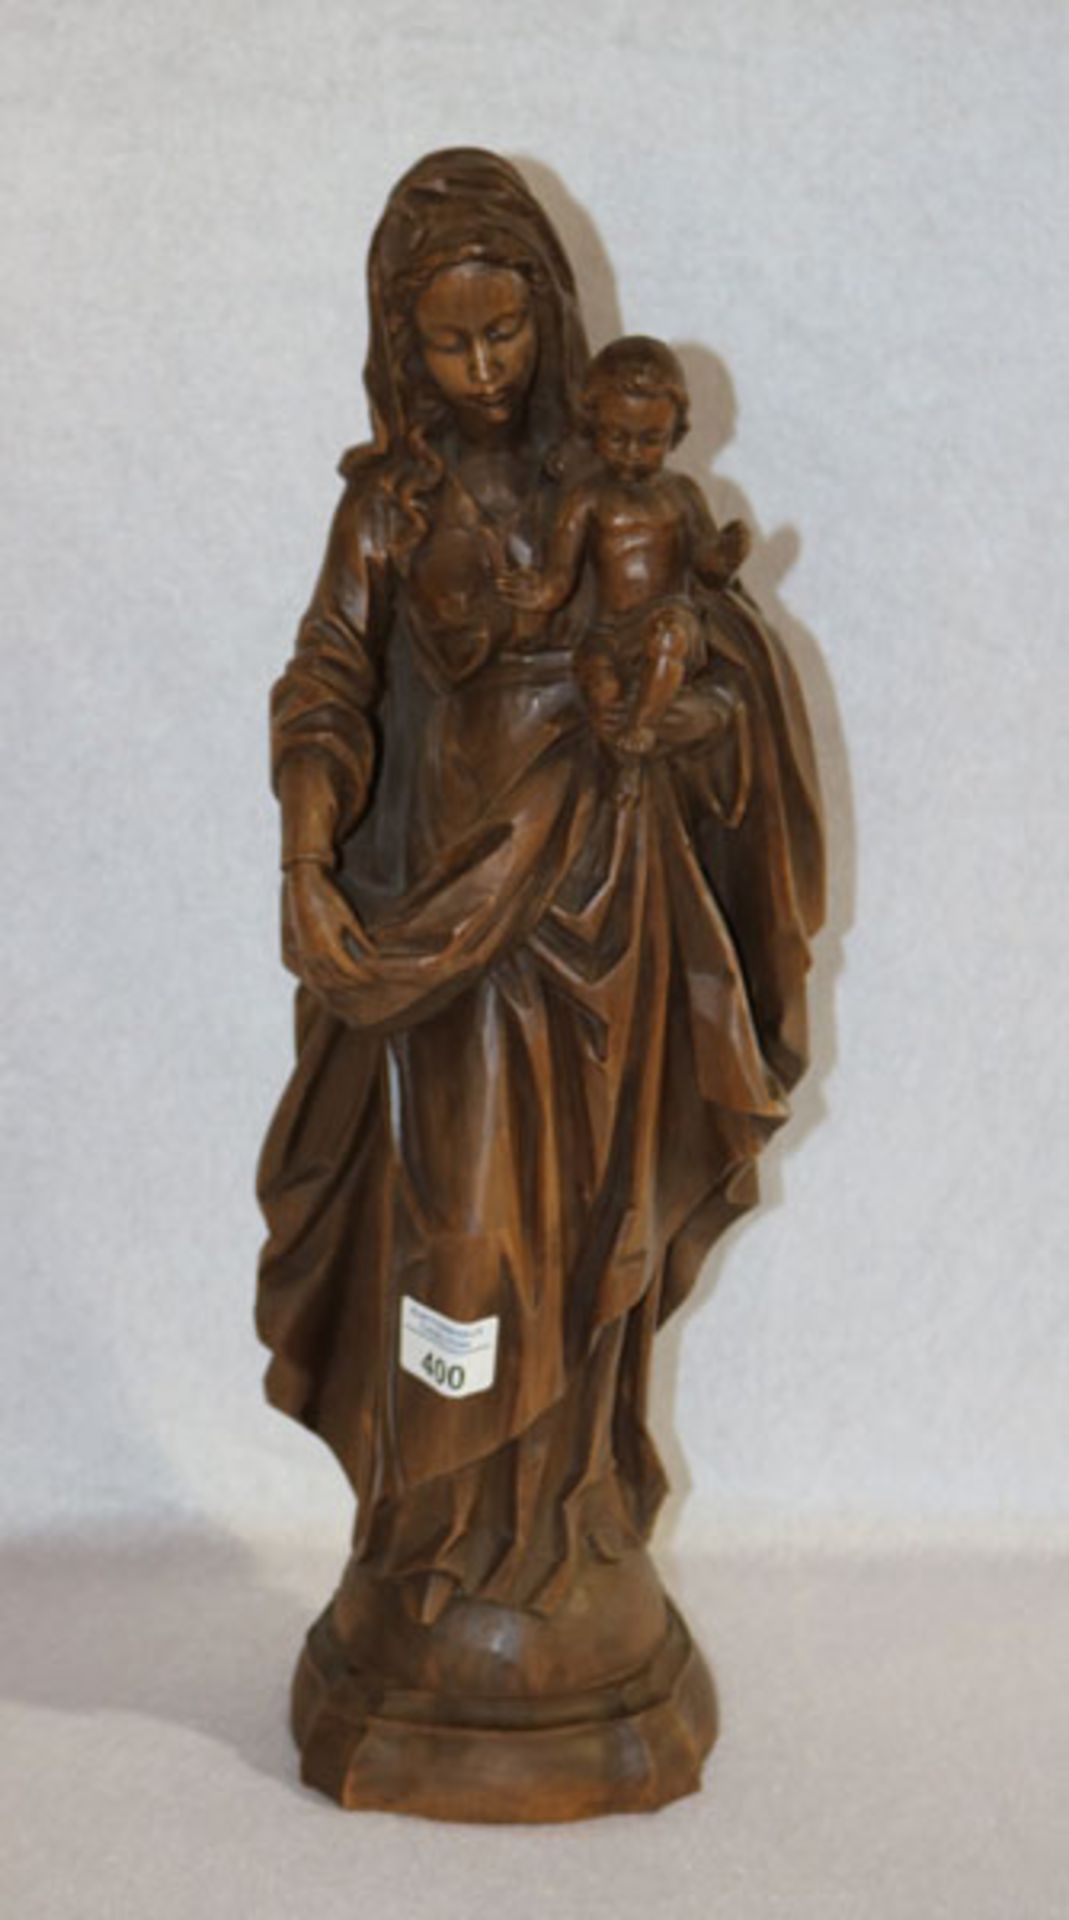 Holz Figurenskulptur 'Maria mit Kind', monogrammiert Werkstatt Heinzeller Oberammergau, dunkel